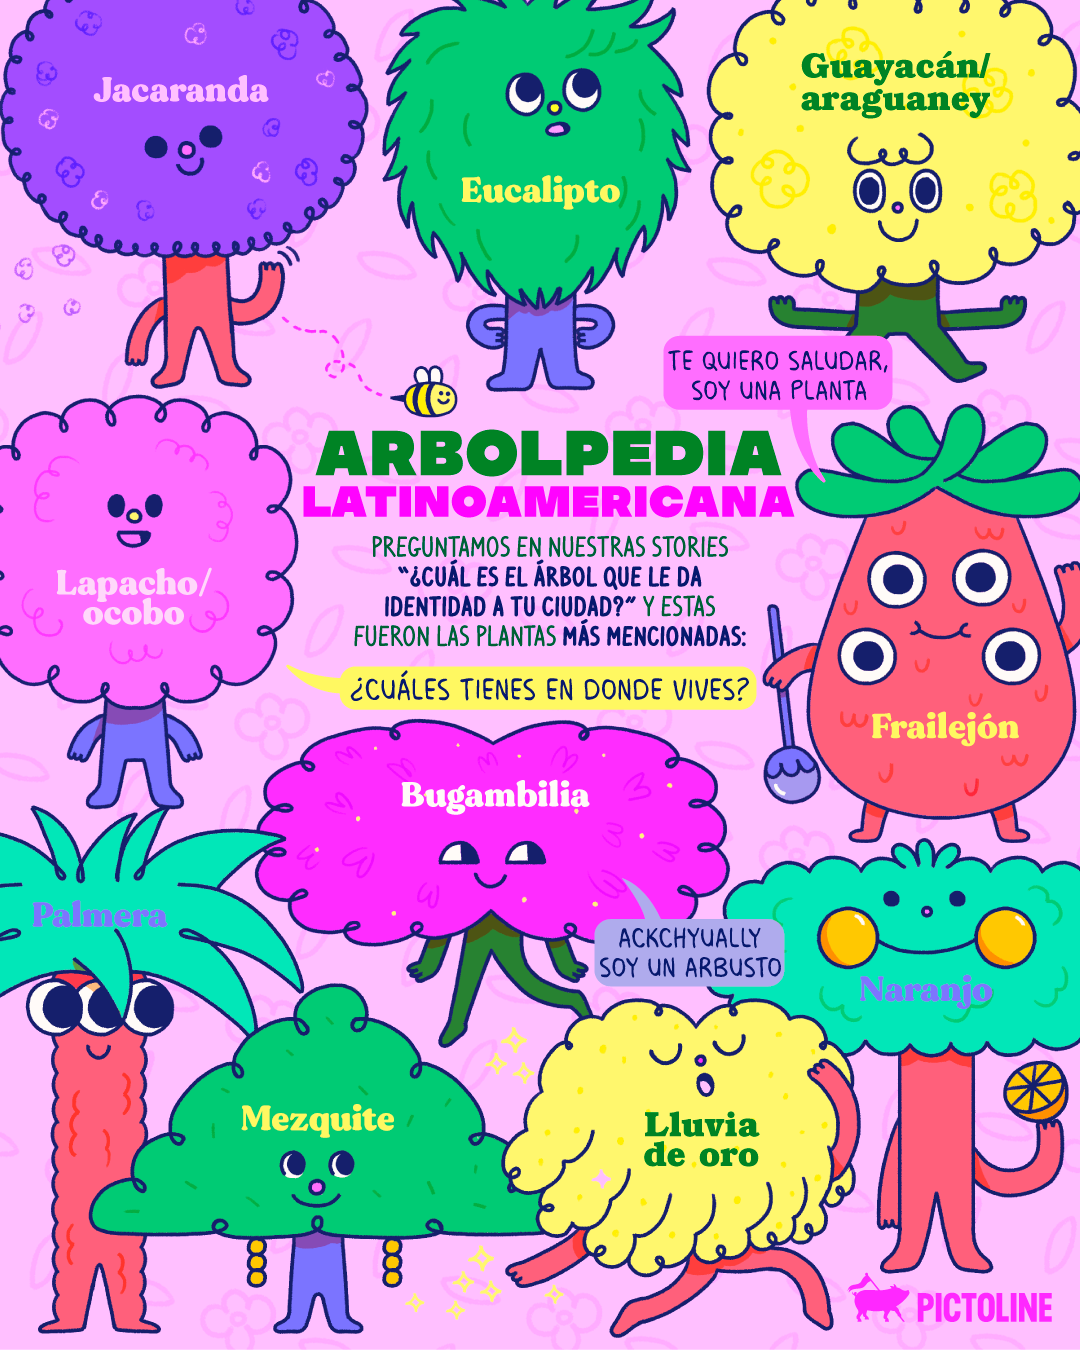 ✨🌺🌳 Arbolpedia Latinoamericana 🌲🌴💖 Preguntamos en nuestras stories "¿cuál es el árbol que le da identidad a tu ciudad?" y estas fueron las plantas más mencionadas: